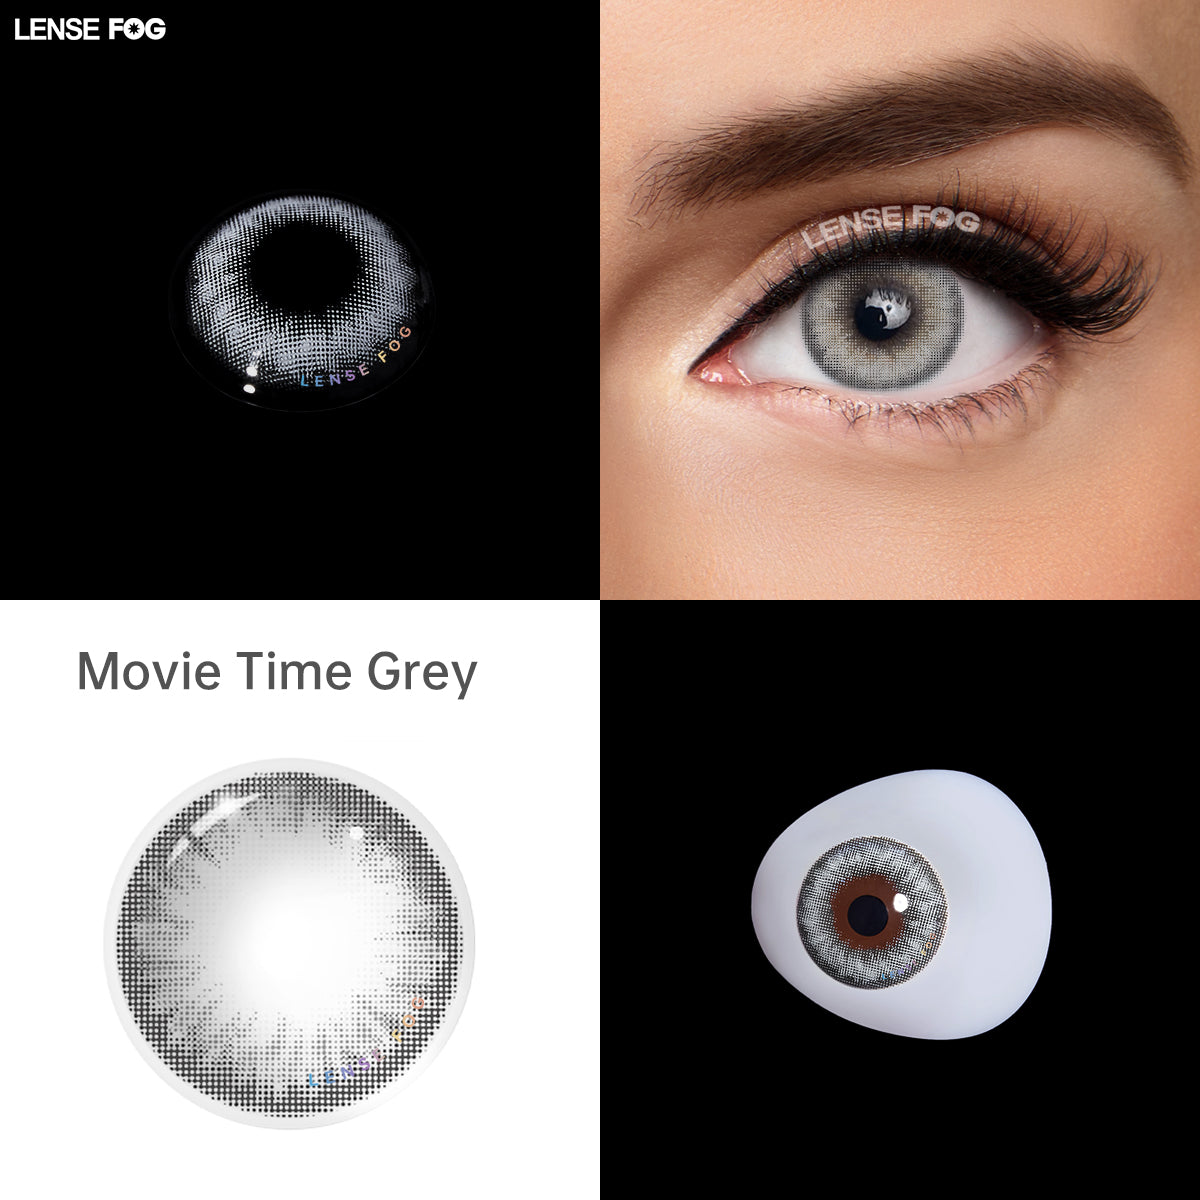 Movie Time Grey